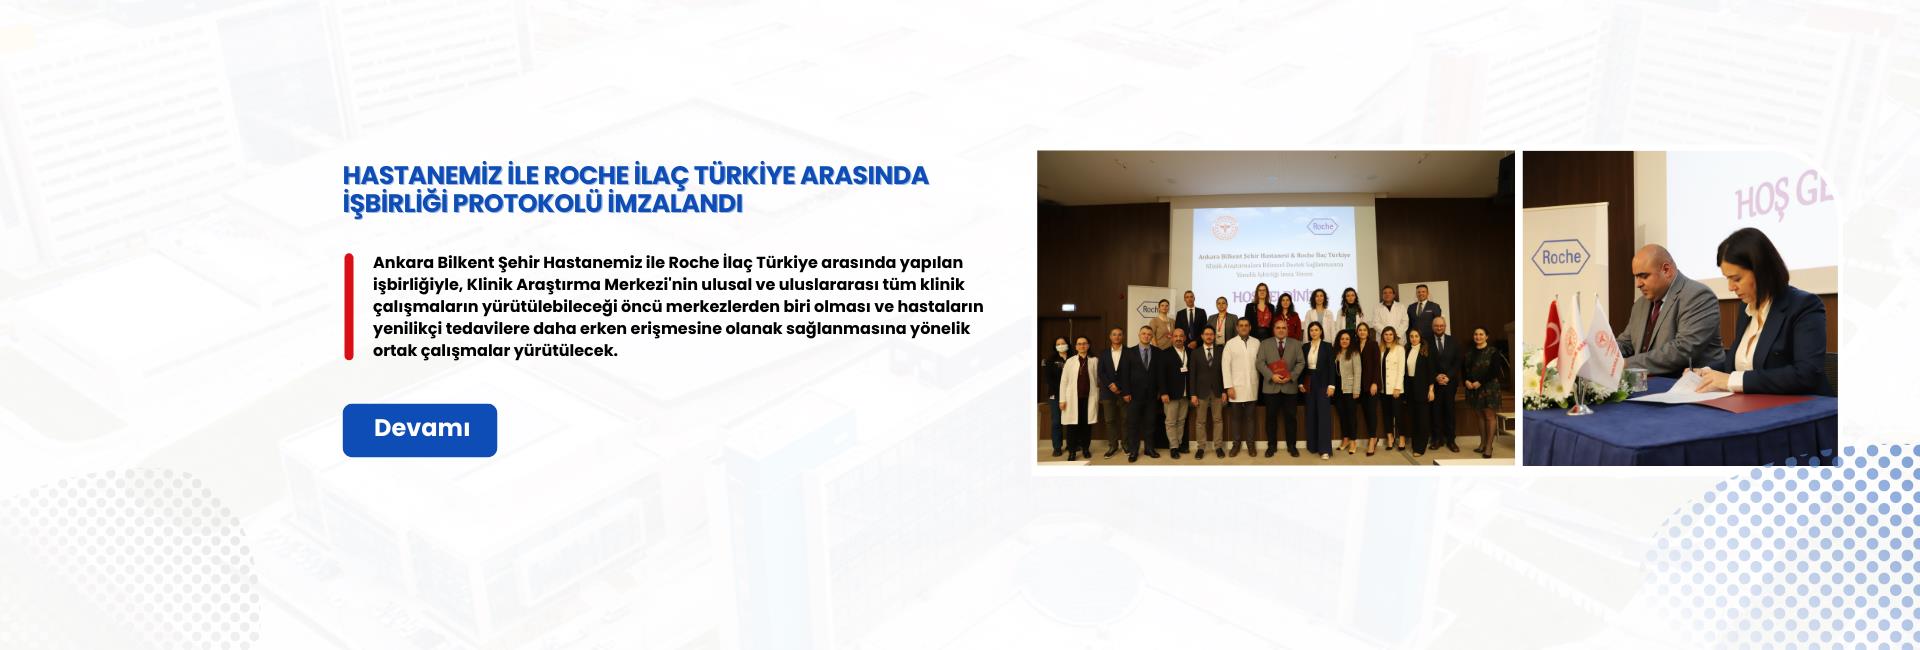 Ankara Bilkent Şehir Hastanemiz ile Roche İlaç Türkiye arasında, hastanede düzenlenen törenle işbirliği protokolü imzalandı.